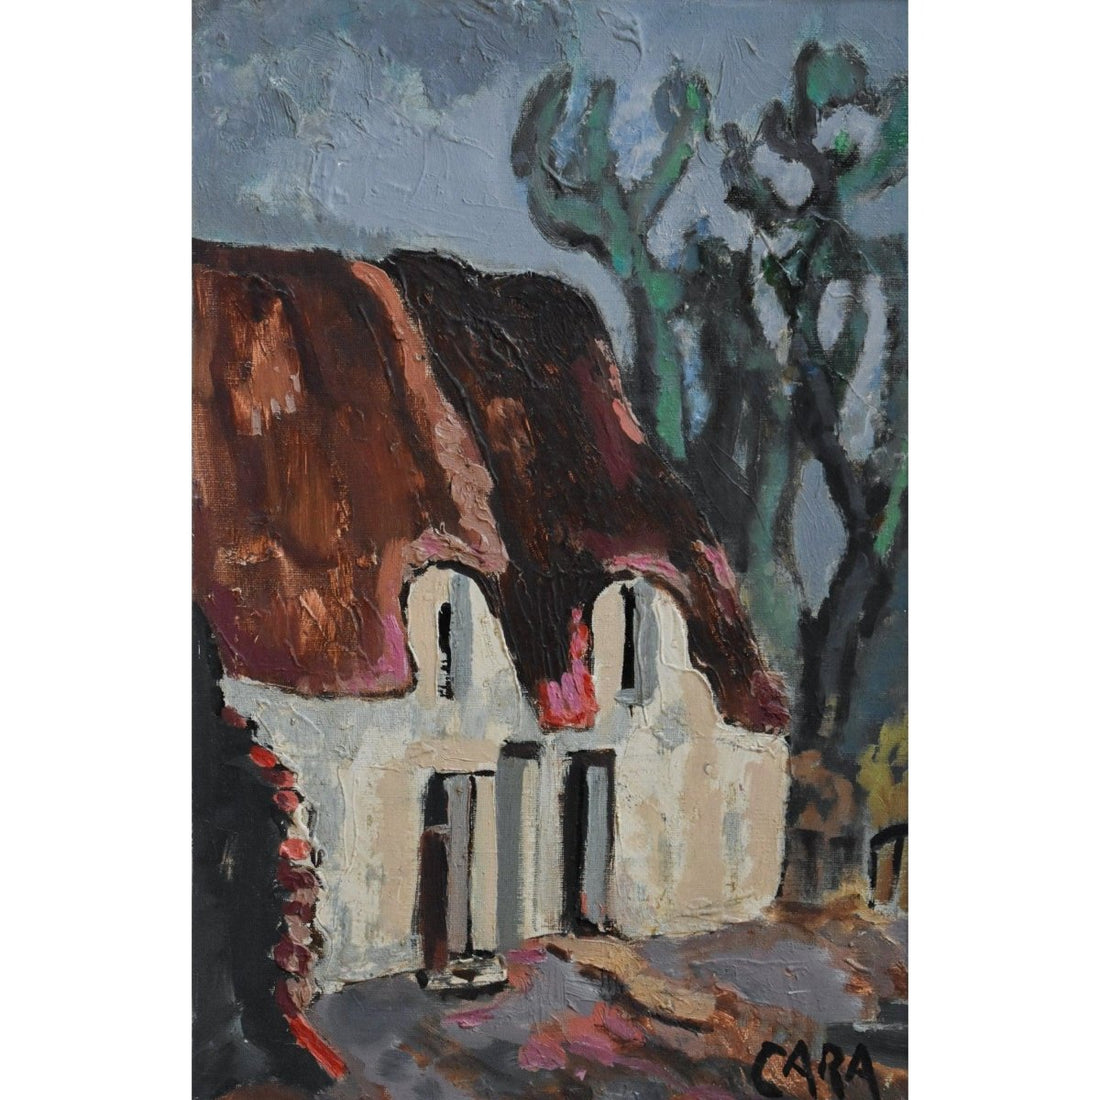 Stéphane Cara – The Cottage - Winckelmann Gallery